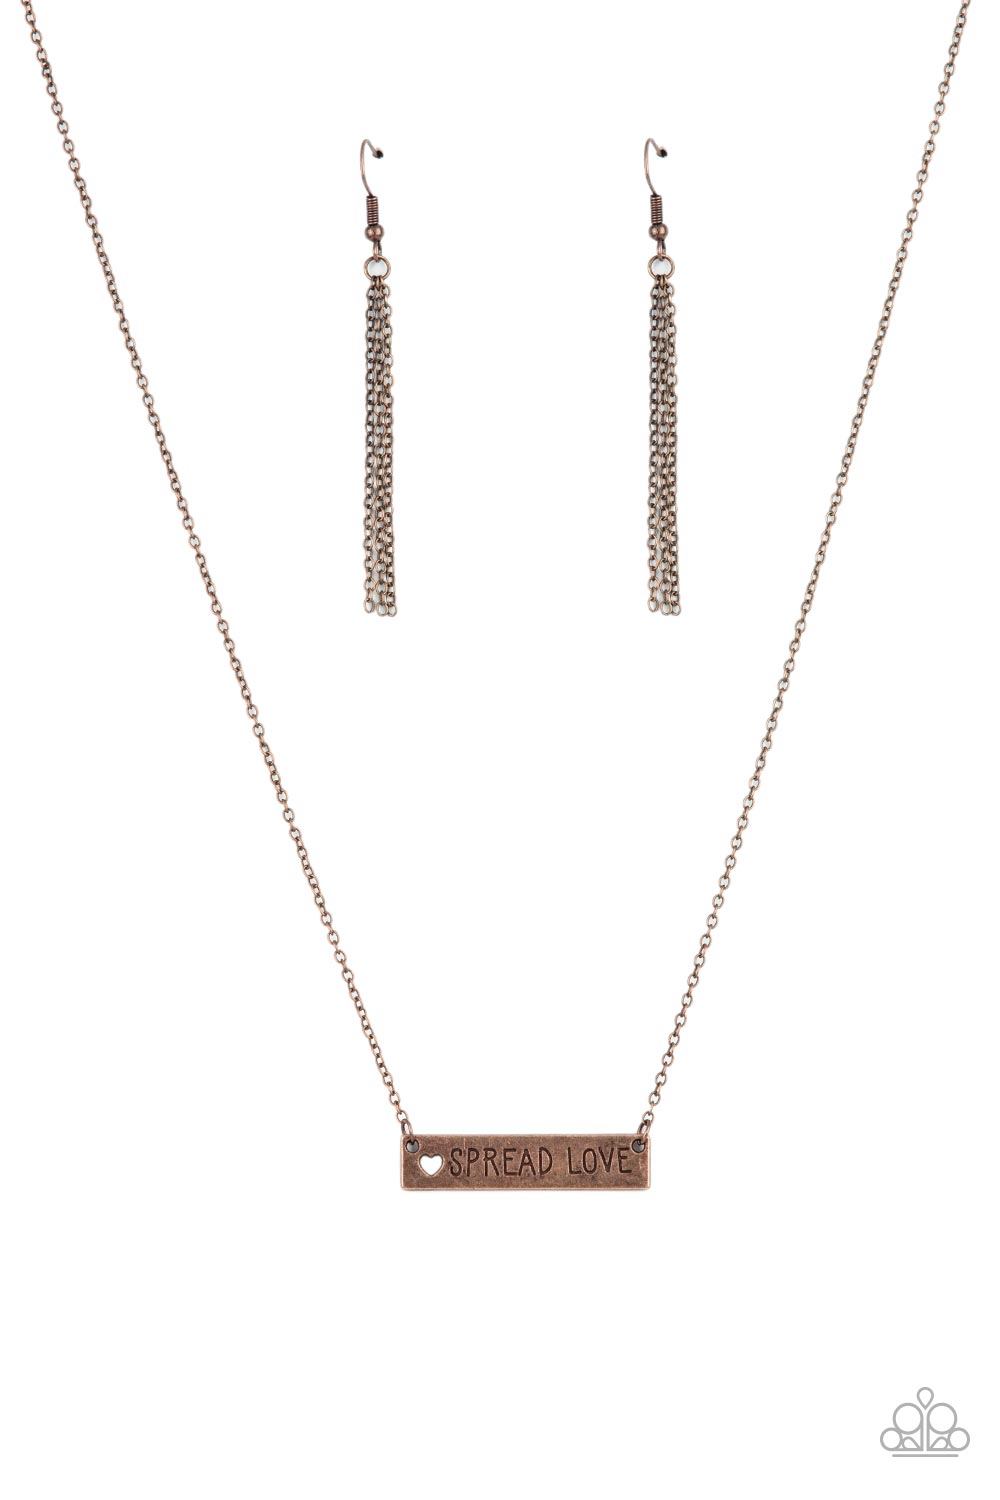 Spread Love - copper - Paparazzi necklace